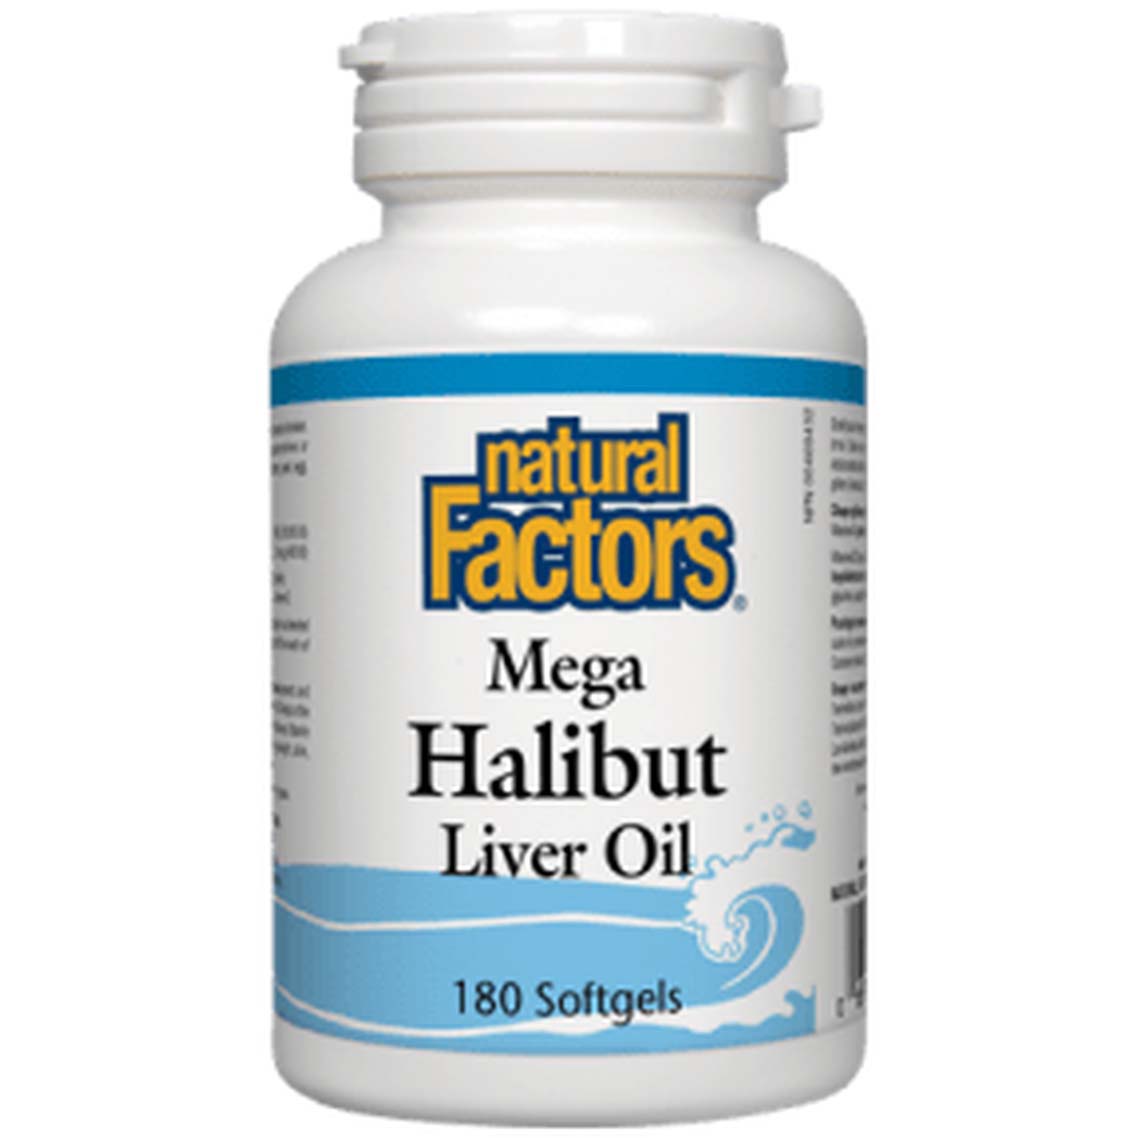 Natural Factors Mega Halibut Liver Oil, 180 Softgels